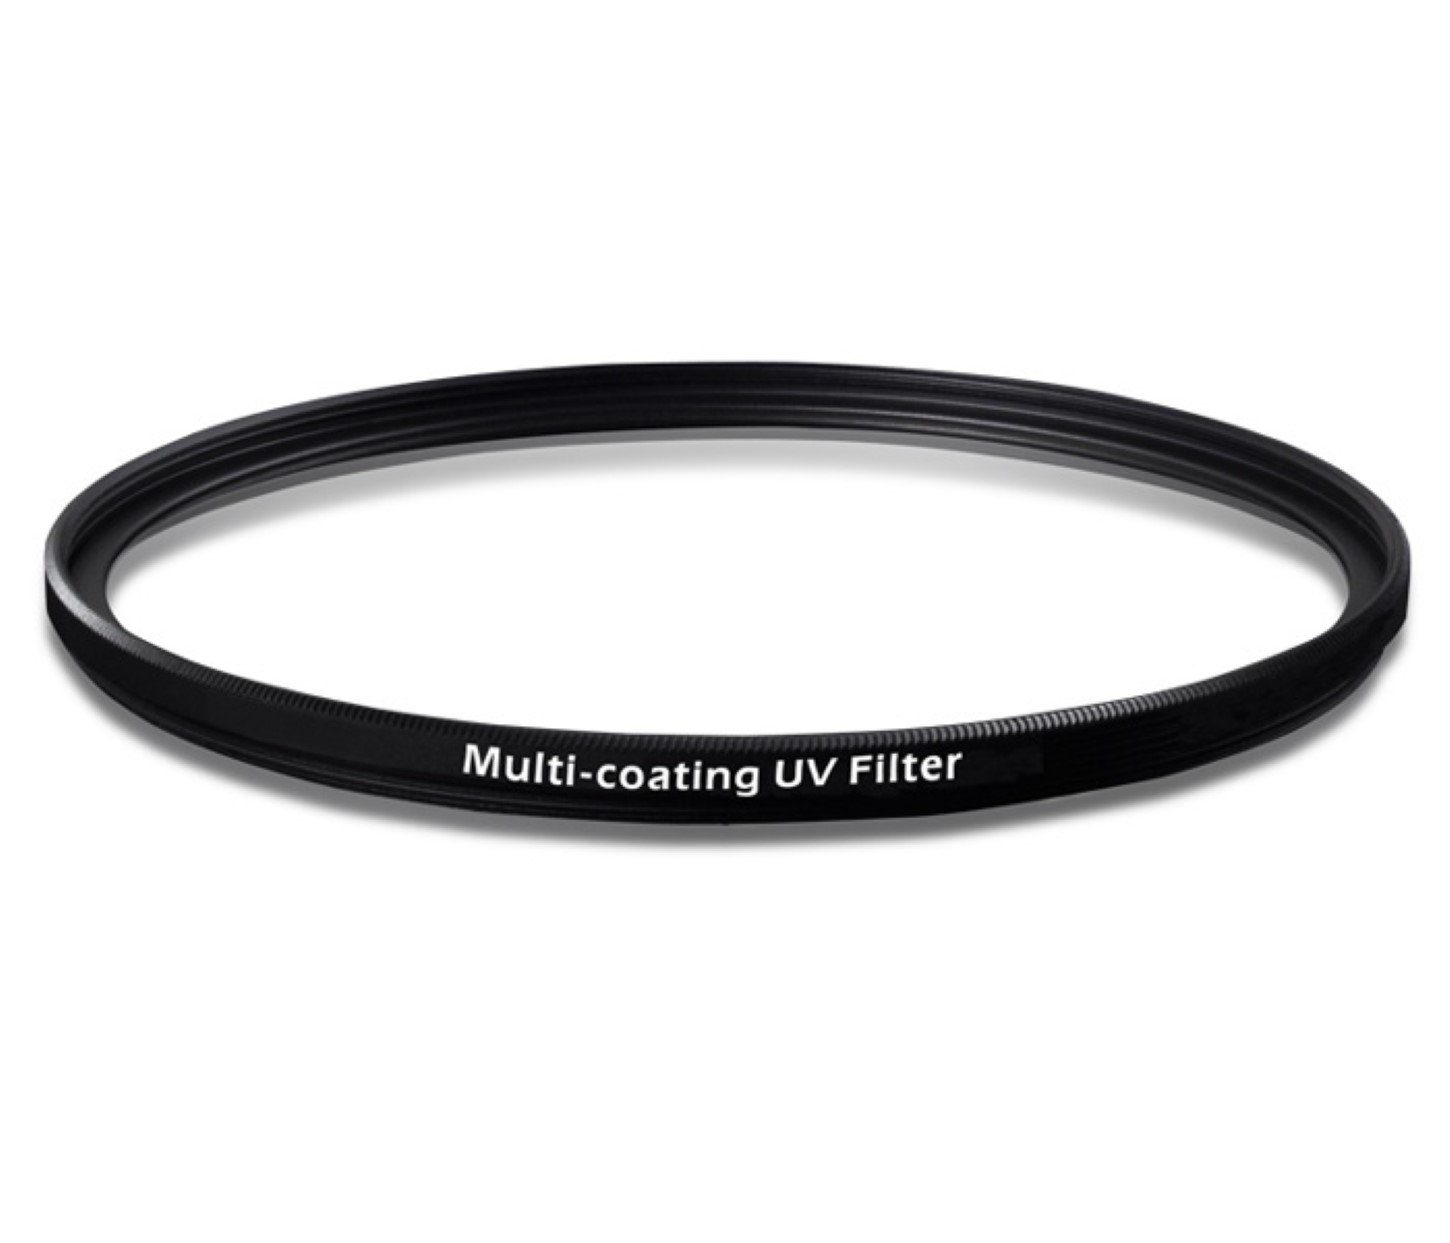 Schott Foto-UV-Filter Multi mehrfach mm Coating ayex Filter 55 Glas UV vergütetes